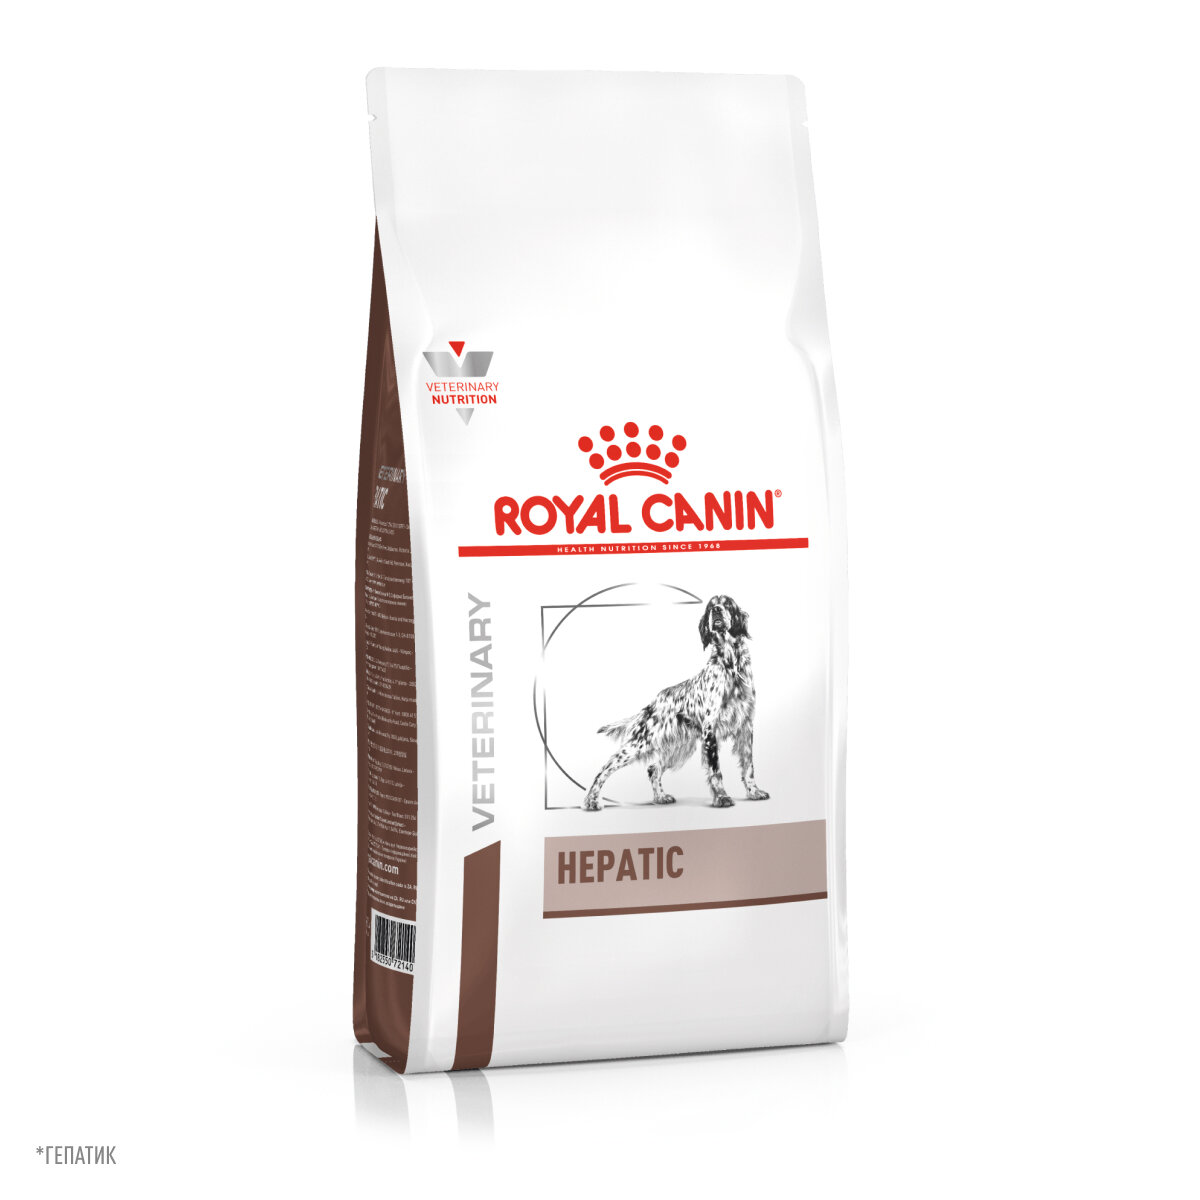 Royal Canin (.) RC      (Hepatic HF16) 39271200R139271200R0 | Hepatic 12  11784